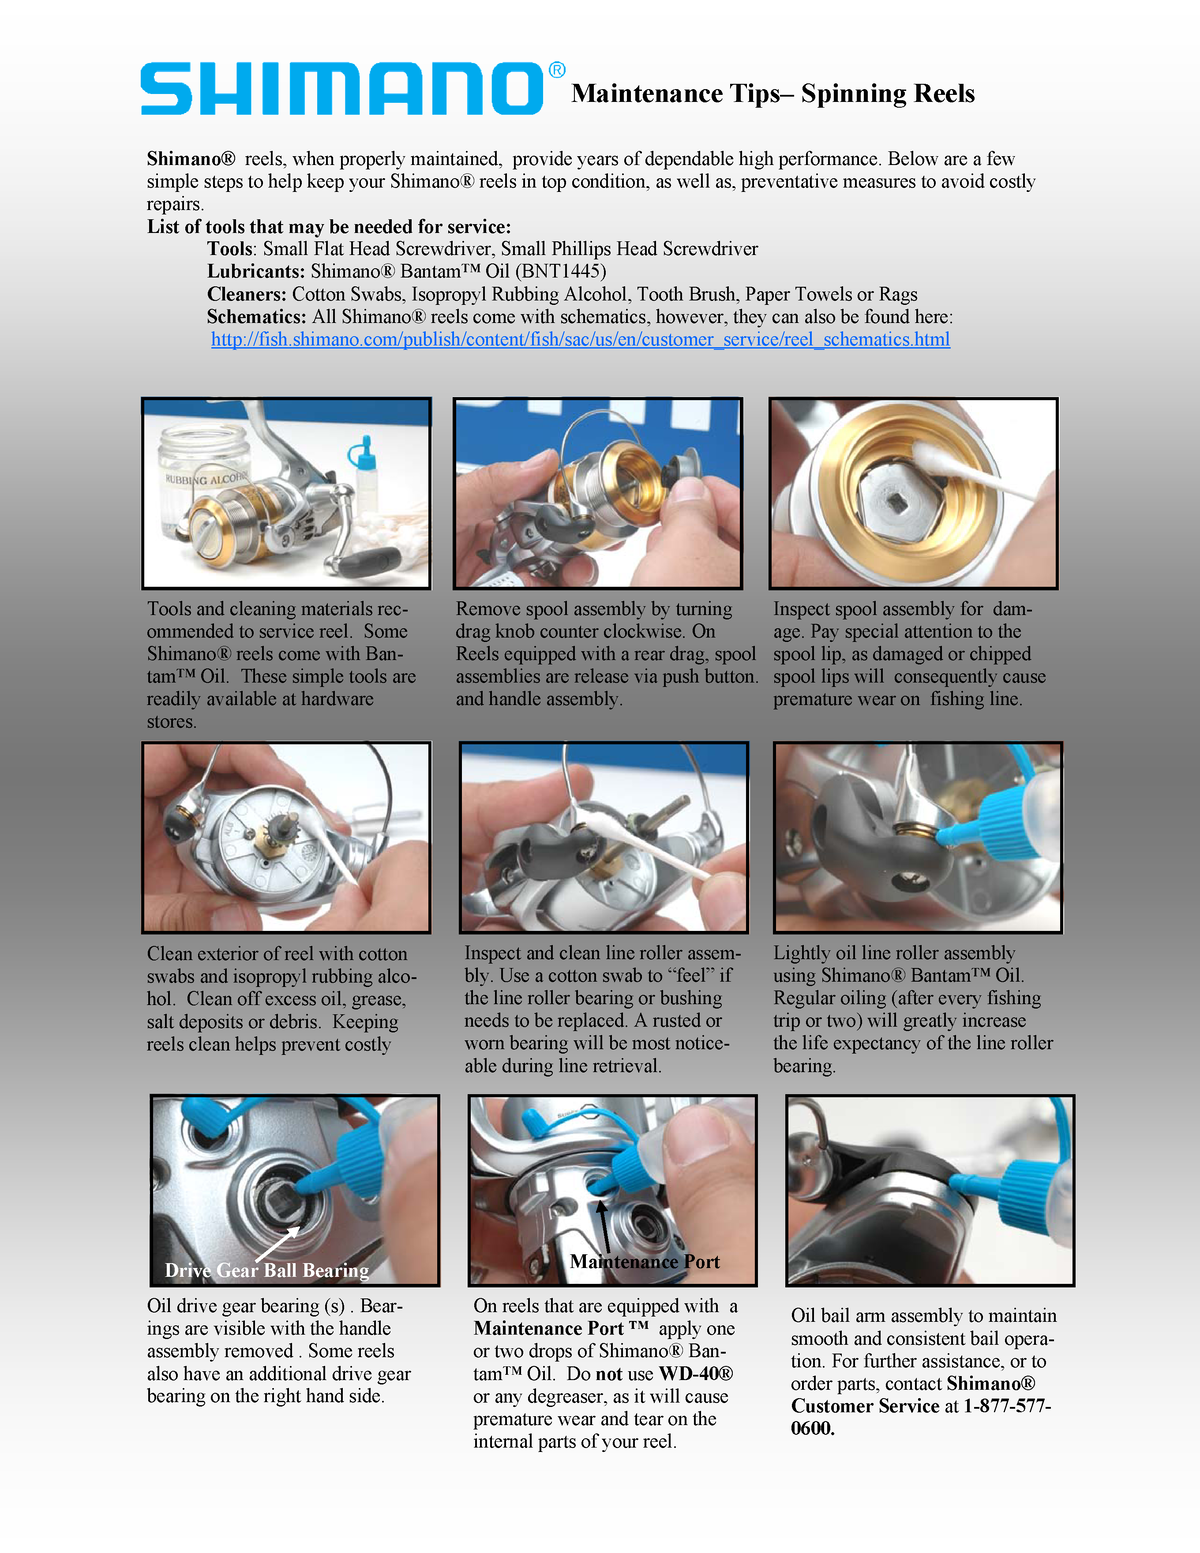 Spinning Reels maint - Grade: 4 - Maintenance Tips– Spinning Reels